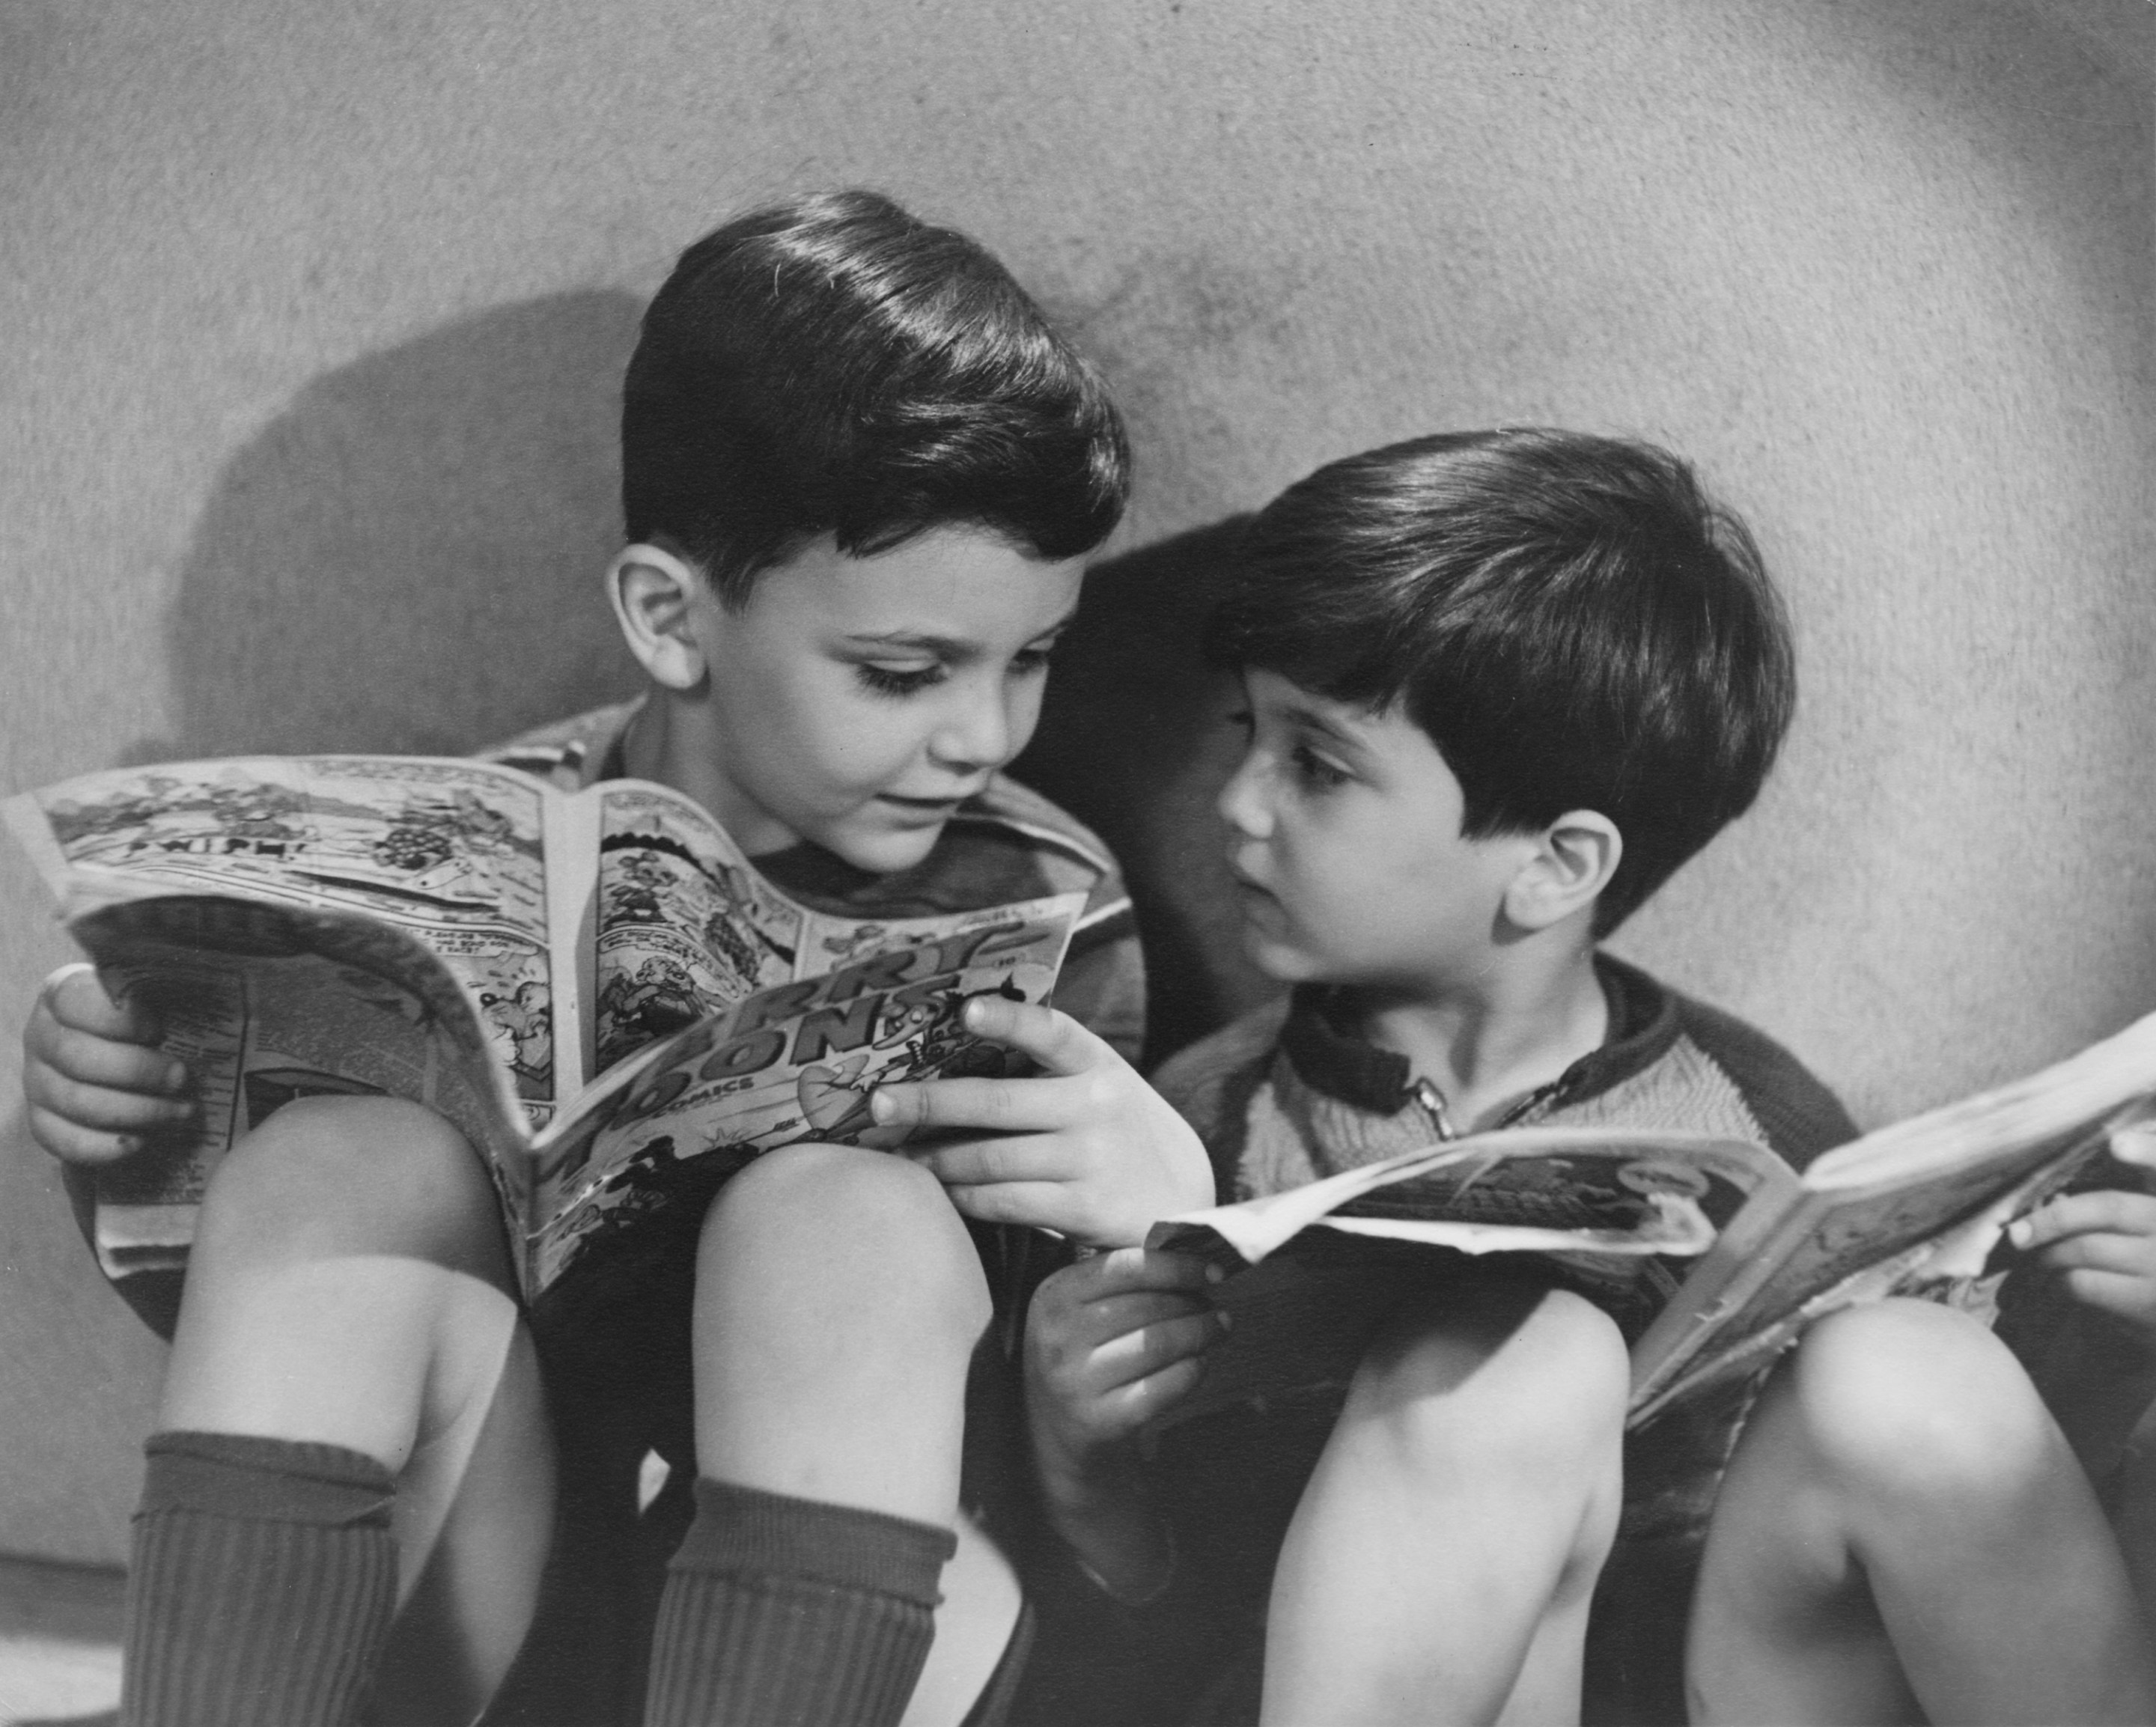 Two boys reading comics, circa 1950.